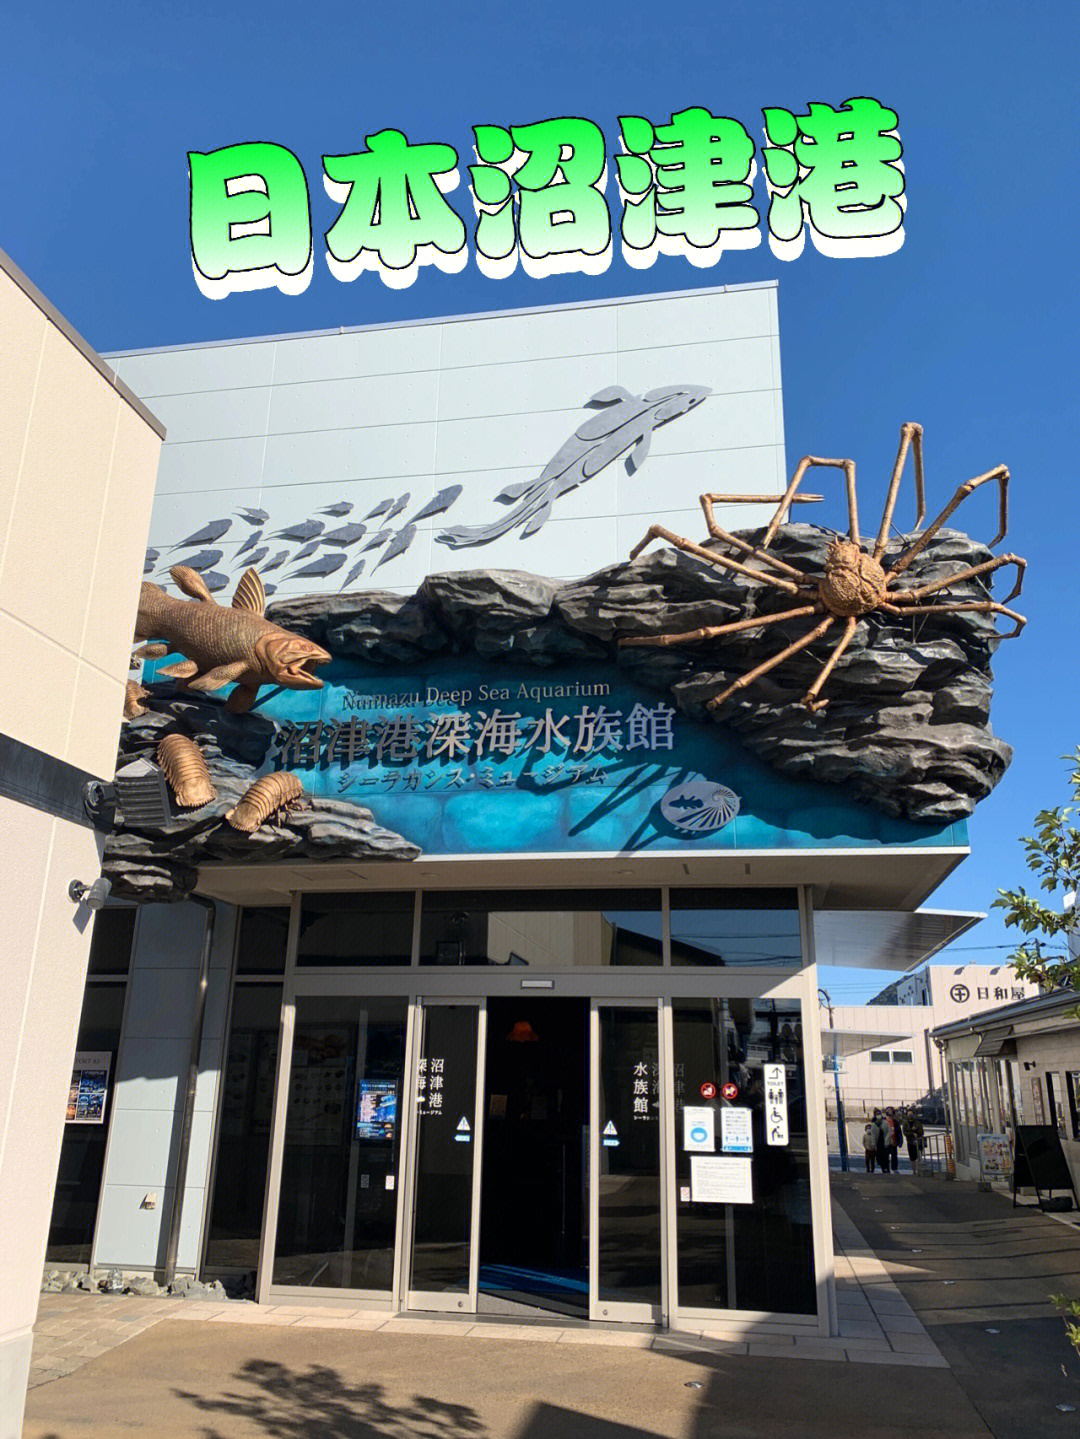 沼津港深海水族馆日本海鲜市场美食分享